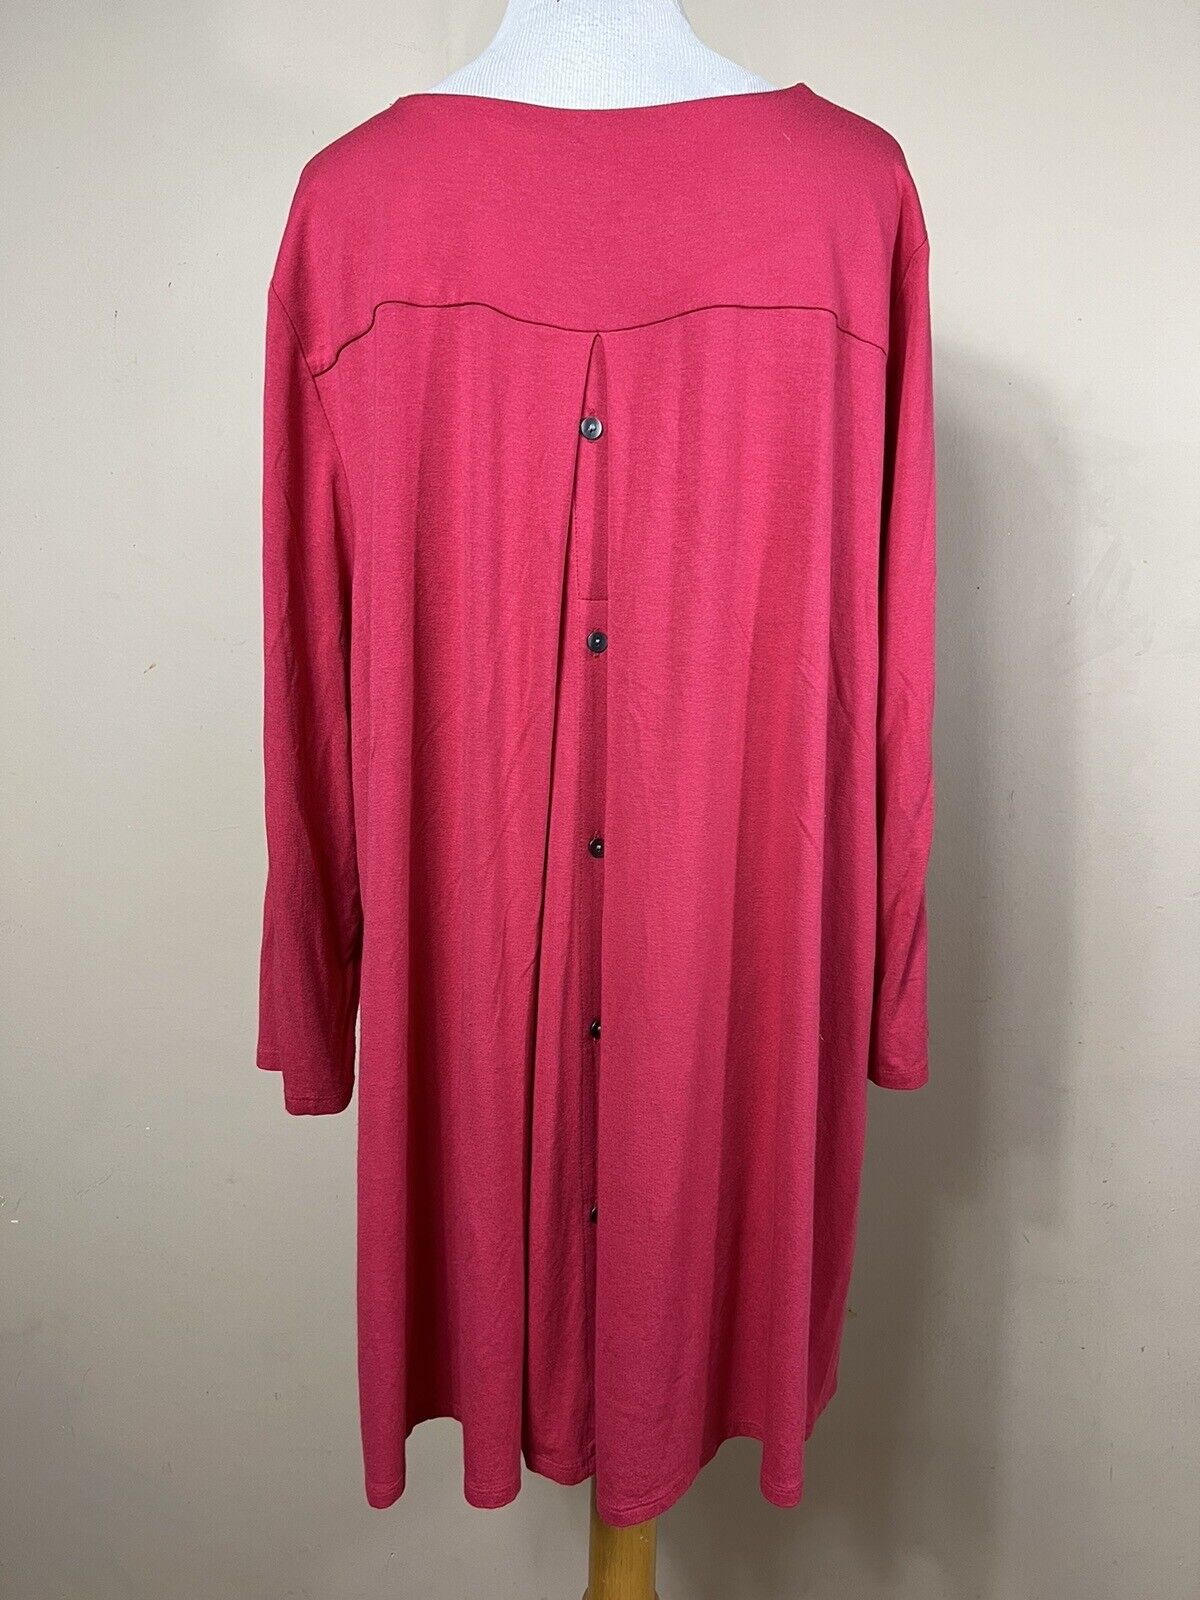 J Jill XL Shirt Top Pink V Neck Long Tunic Stretc… - image 5